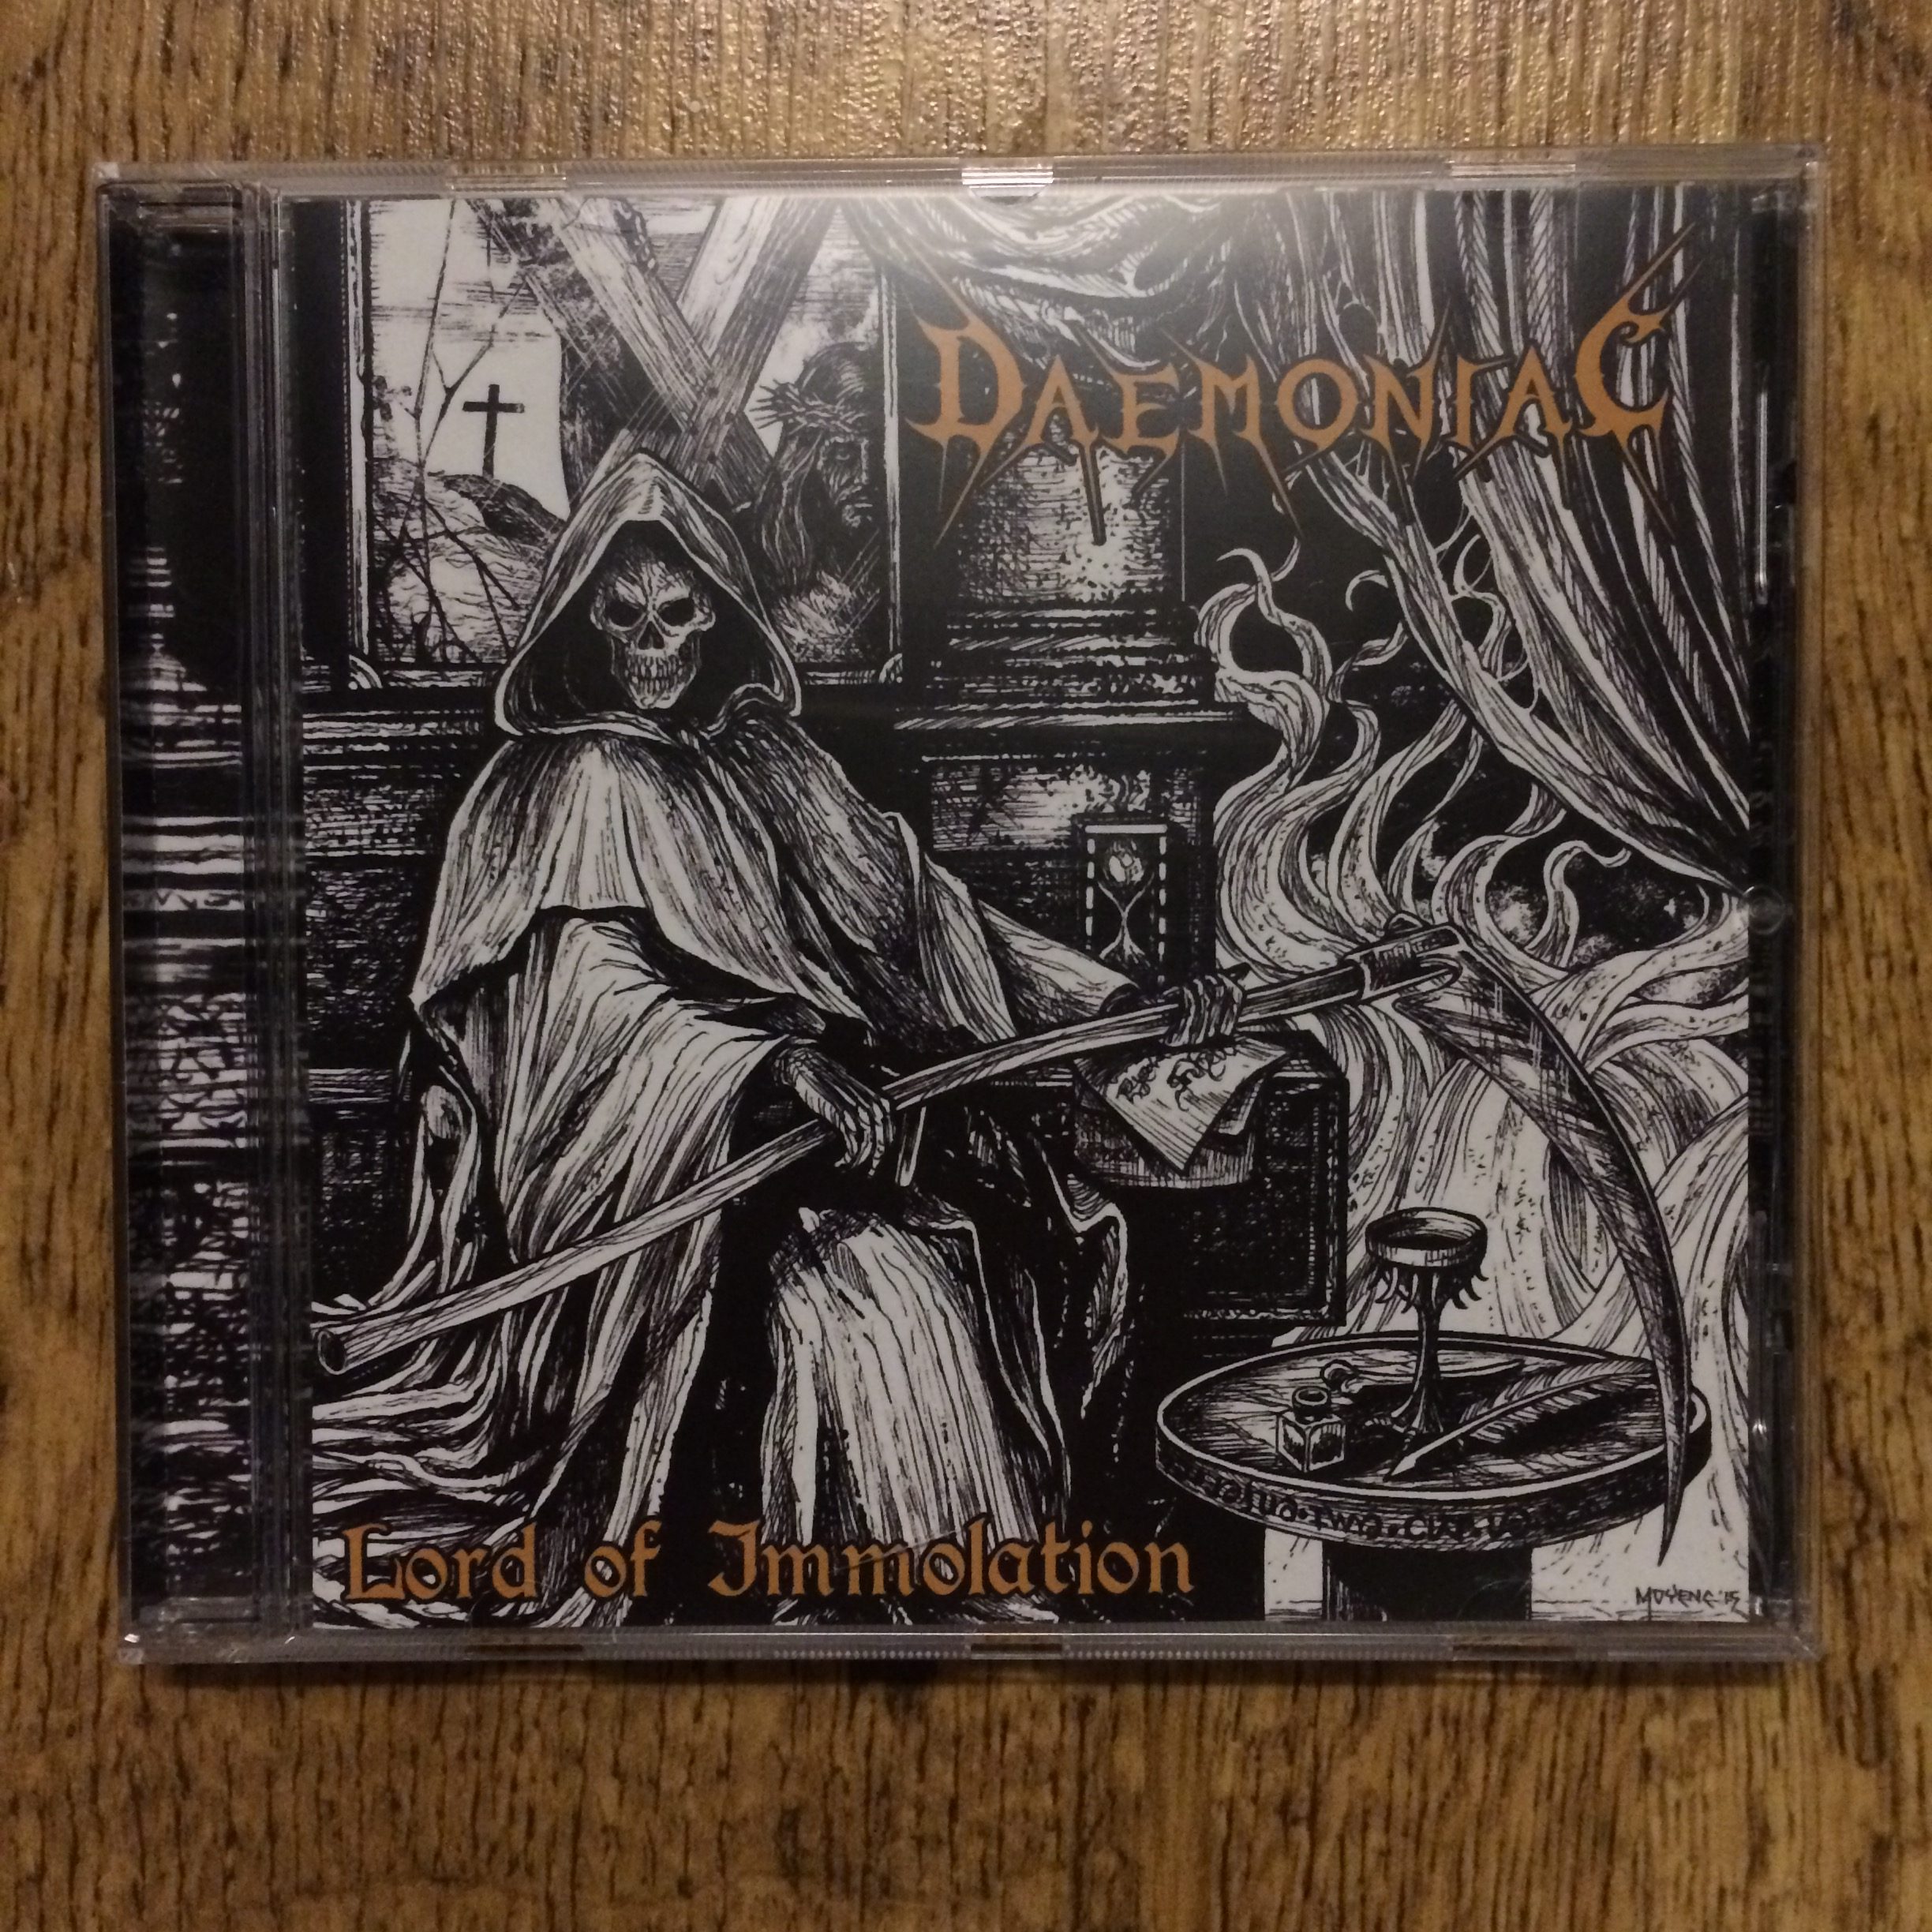 Photo of the Daemoniac - 